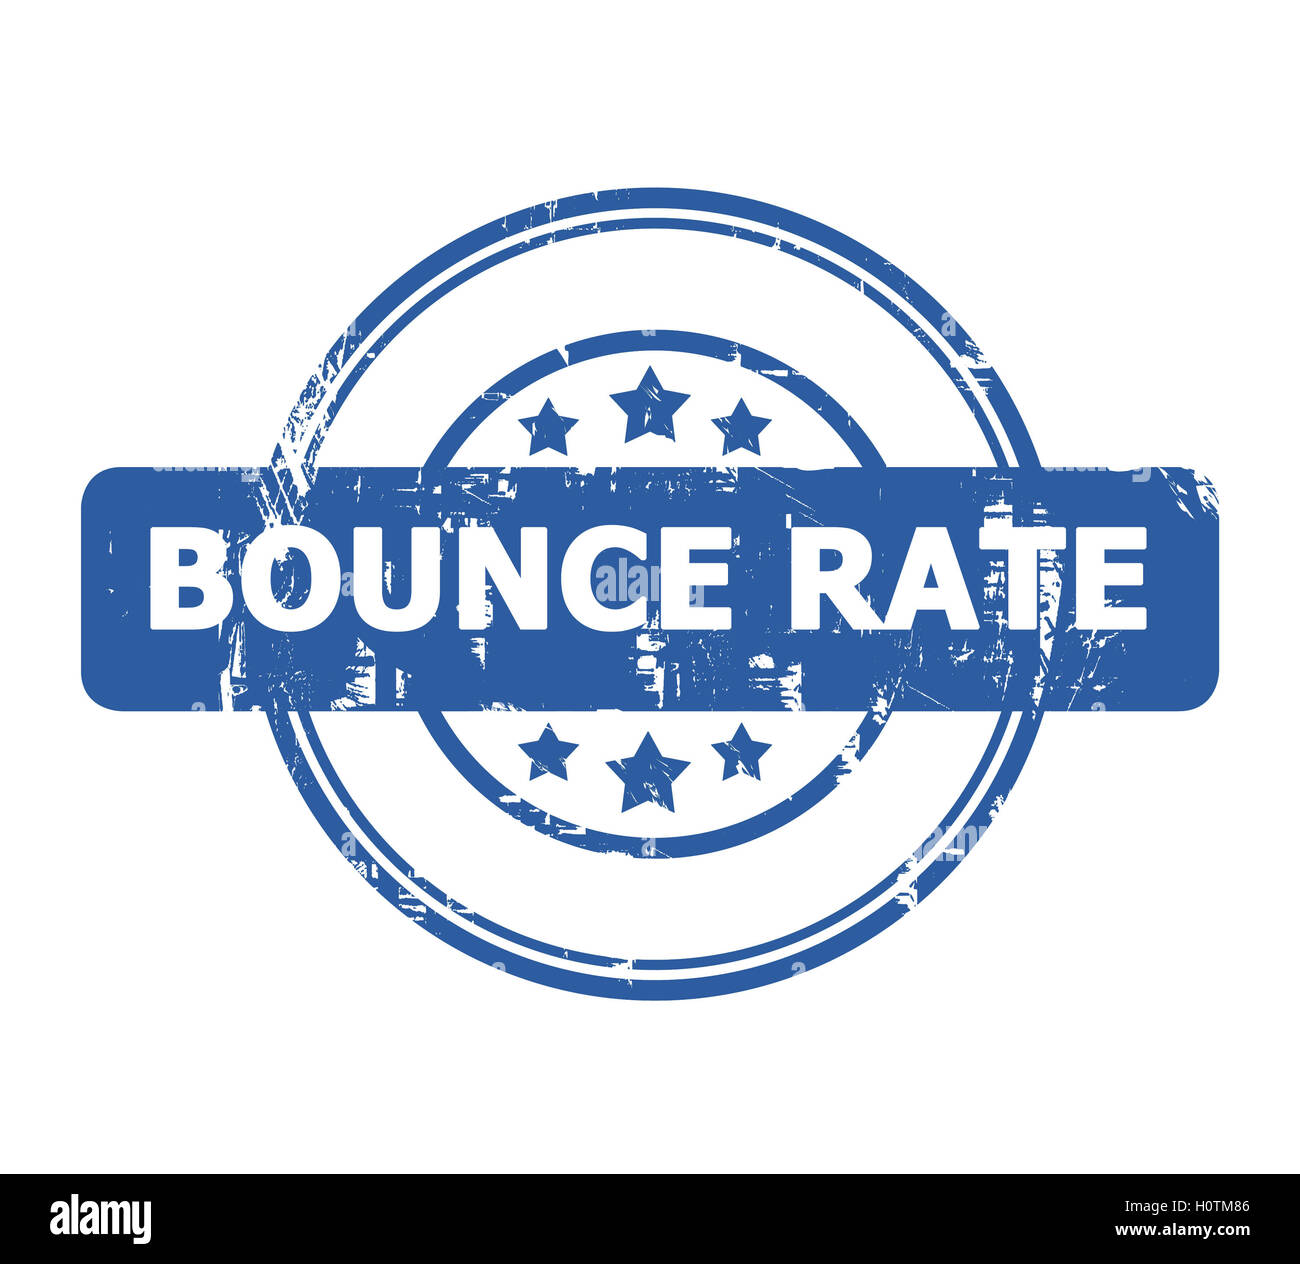 Bounce Rate Stempel mit Sternen isoliert auf einem weißen Hintergrund. Stockfoto